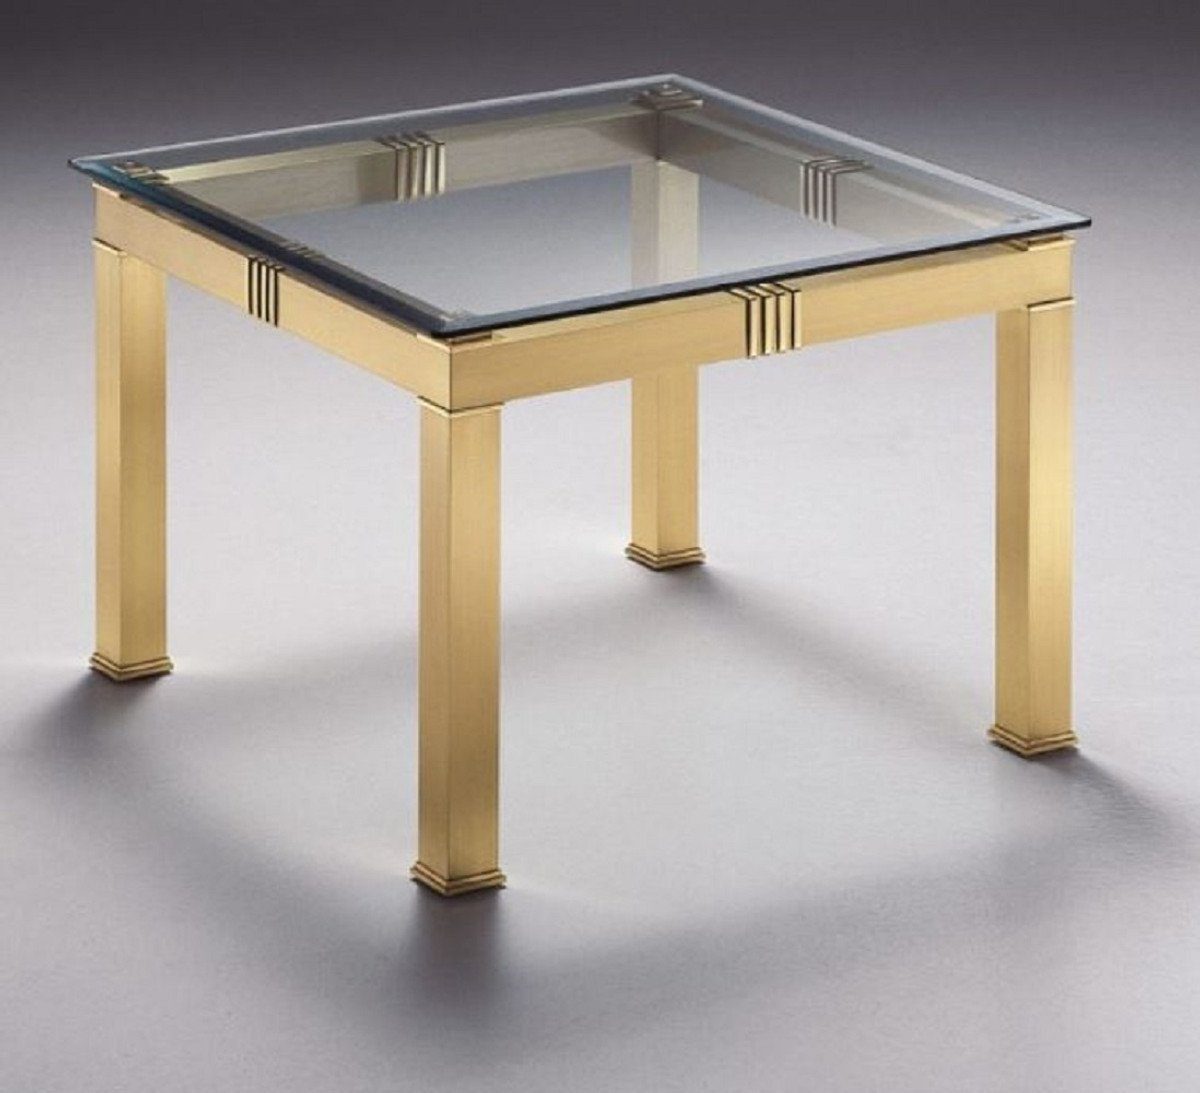 70 Casa Padrino x cm H. Möbel x Messingfarben Luxus mit Quadratischer Beistelltisch Luxus Glasplatte 48 70 - Beistelltisch Messing - Tisch